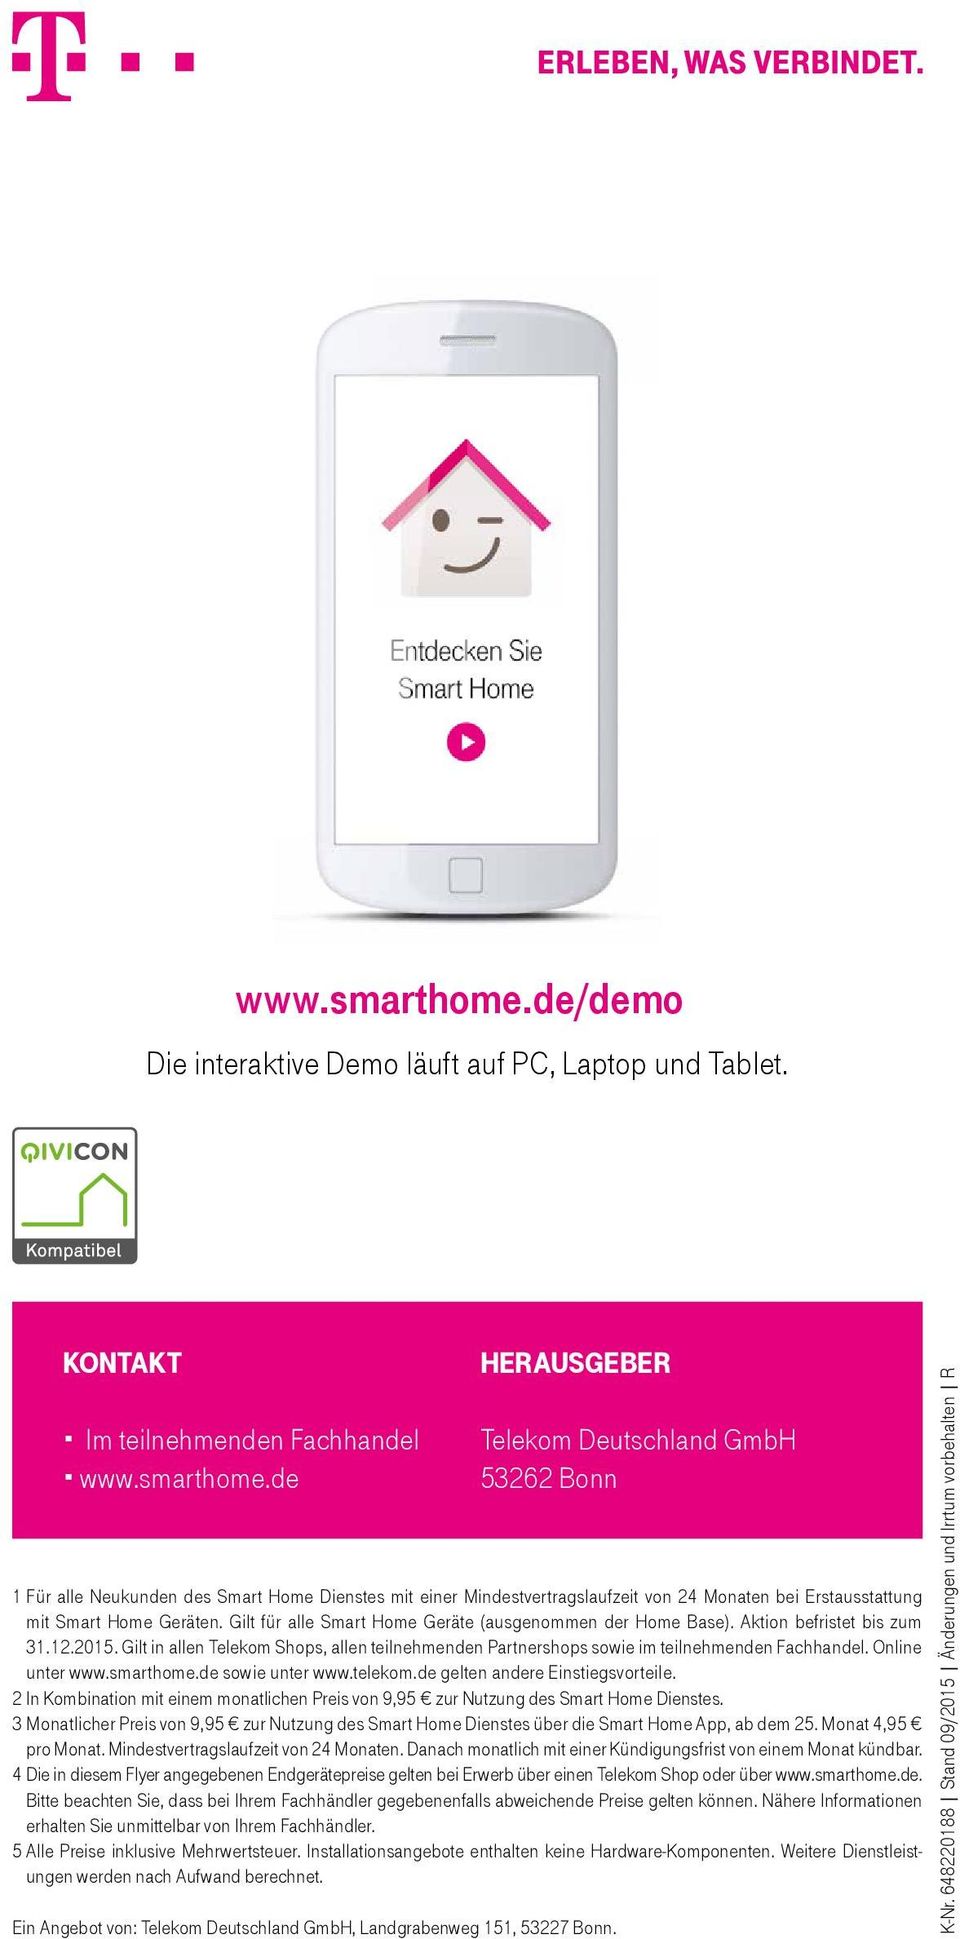 kontakt Im teilnehmenden Fachhandel de herausgeber Telekom Deutschland GmbH 53262 Bonn 1 Für alle Neukunden des Smart Home Dienstes mit einer Mindestvertragslaufzeit von 24 Monaten bei